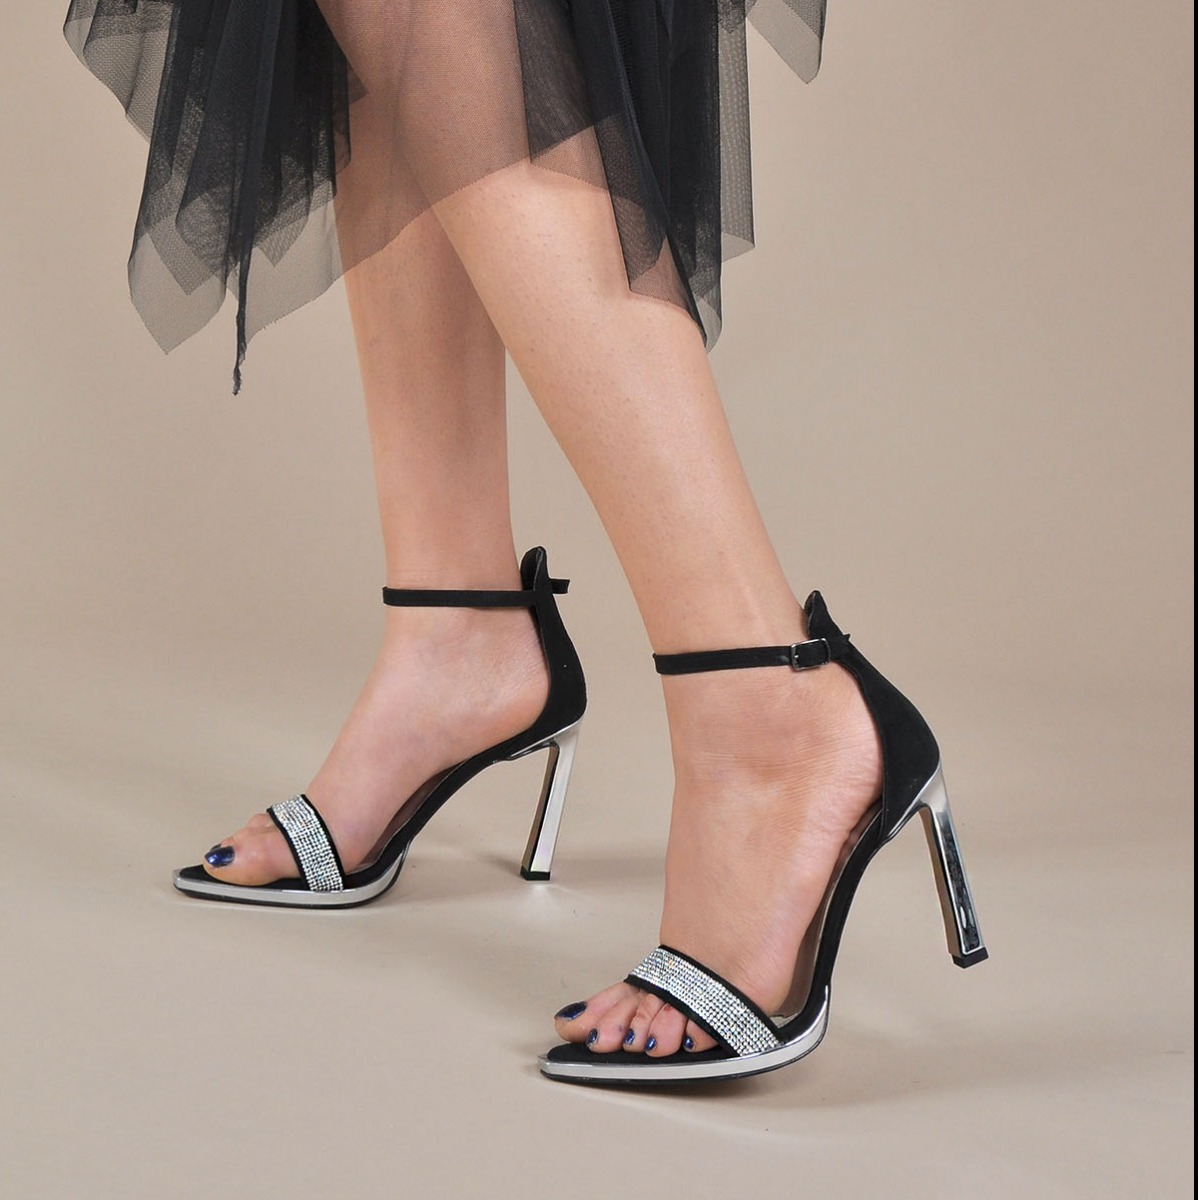 Flo Kadın  Siyah-Süet Klasik Topuklu Ayakkabı VZN20-030Y. 1